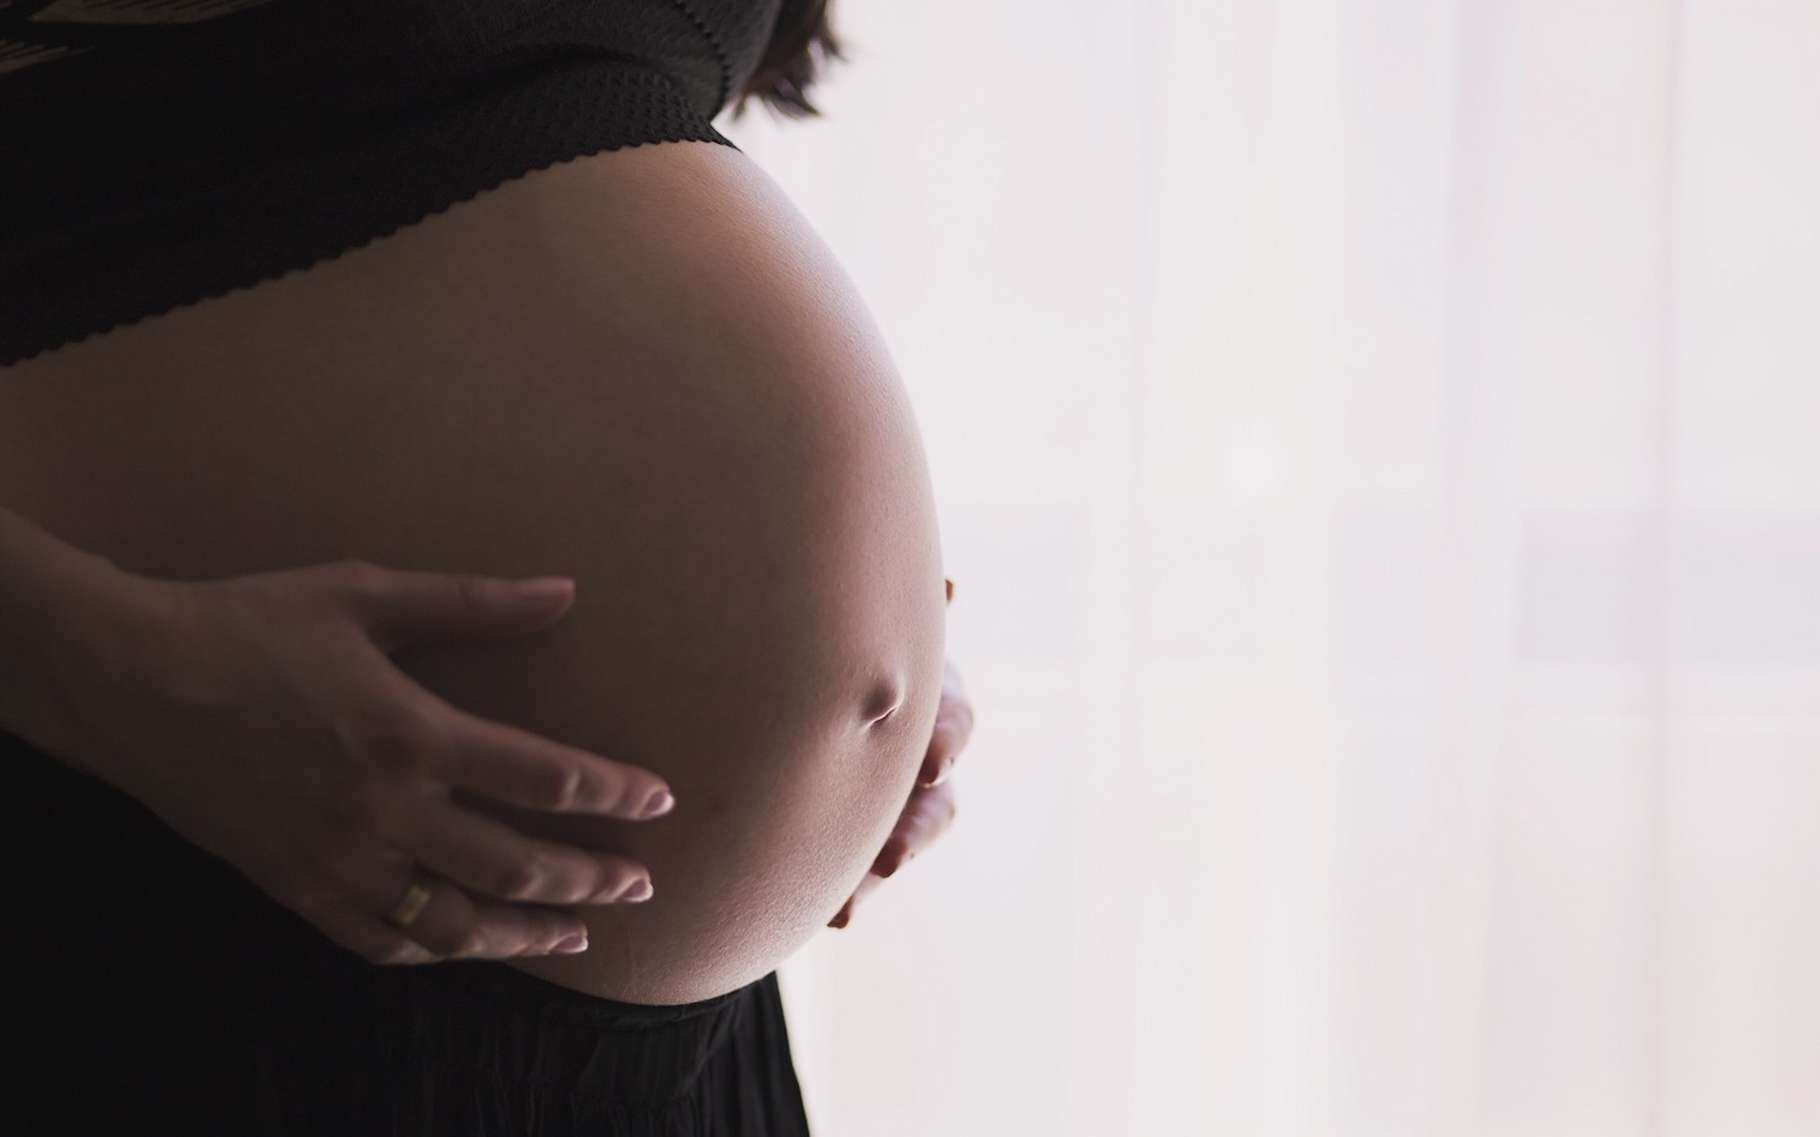 La Covid-19 expose les femmes enceintes à un risque accru de complications. © Free-photos, Pixabay